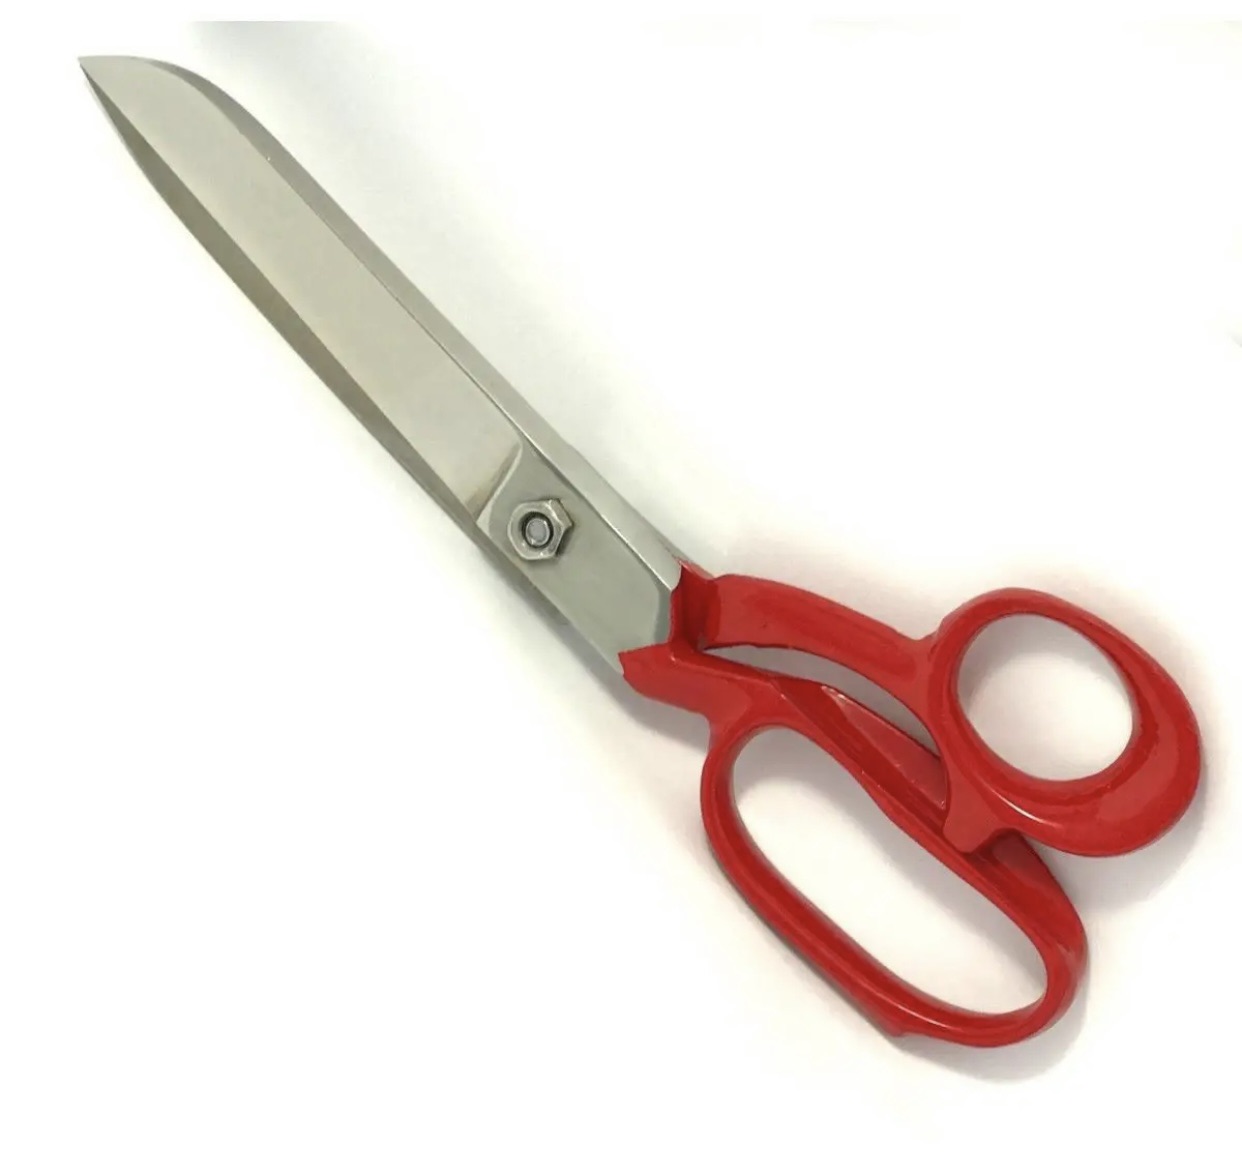 Scissors (9.5-11 inches) - Tailor Scissor - Scissors Set - Kitchen Scissor  - Scissors Tailor - Large Scissor